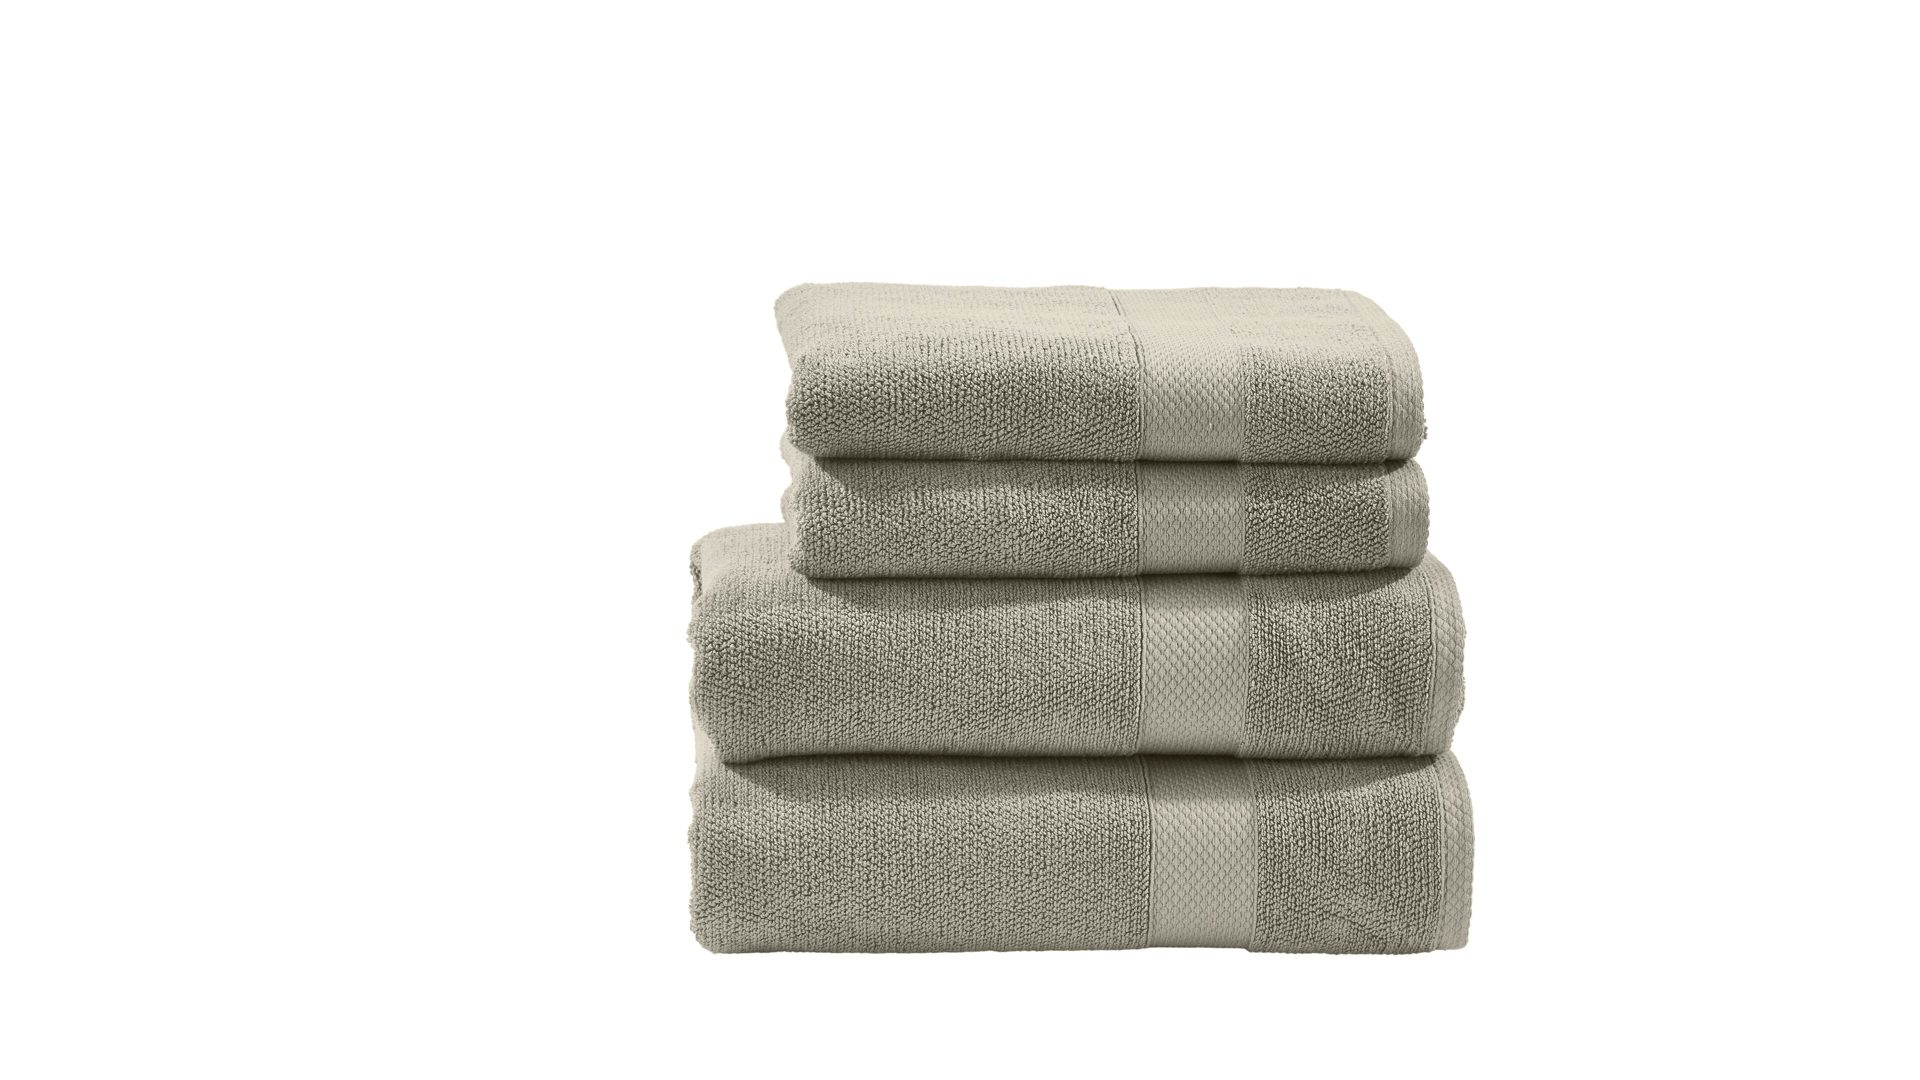 Handtuch-Set Done® by karabel home company aus Stoff in Beige DONE® Handtuch-Set Deluxe - Heimtextilien taupefarbene Baumwolle – vierteilig